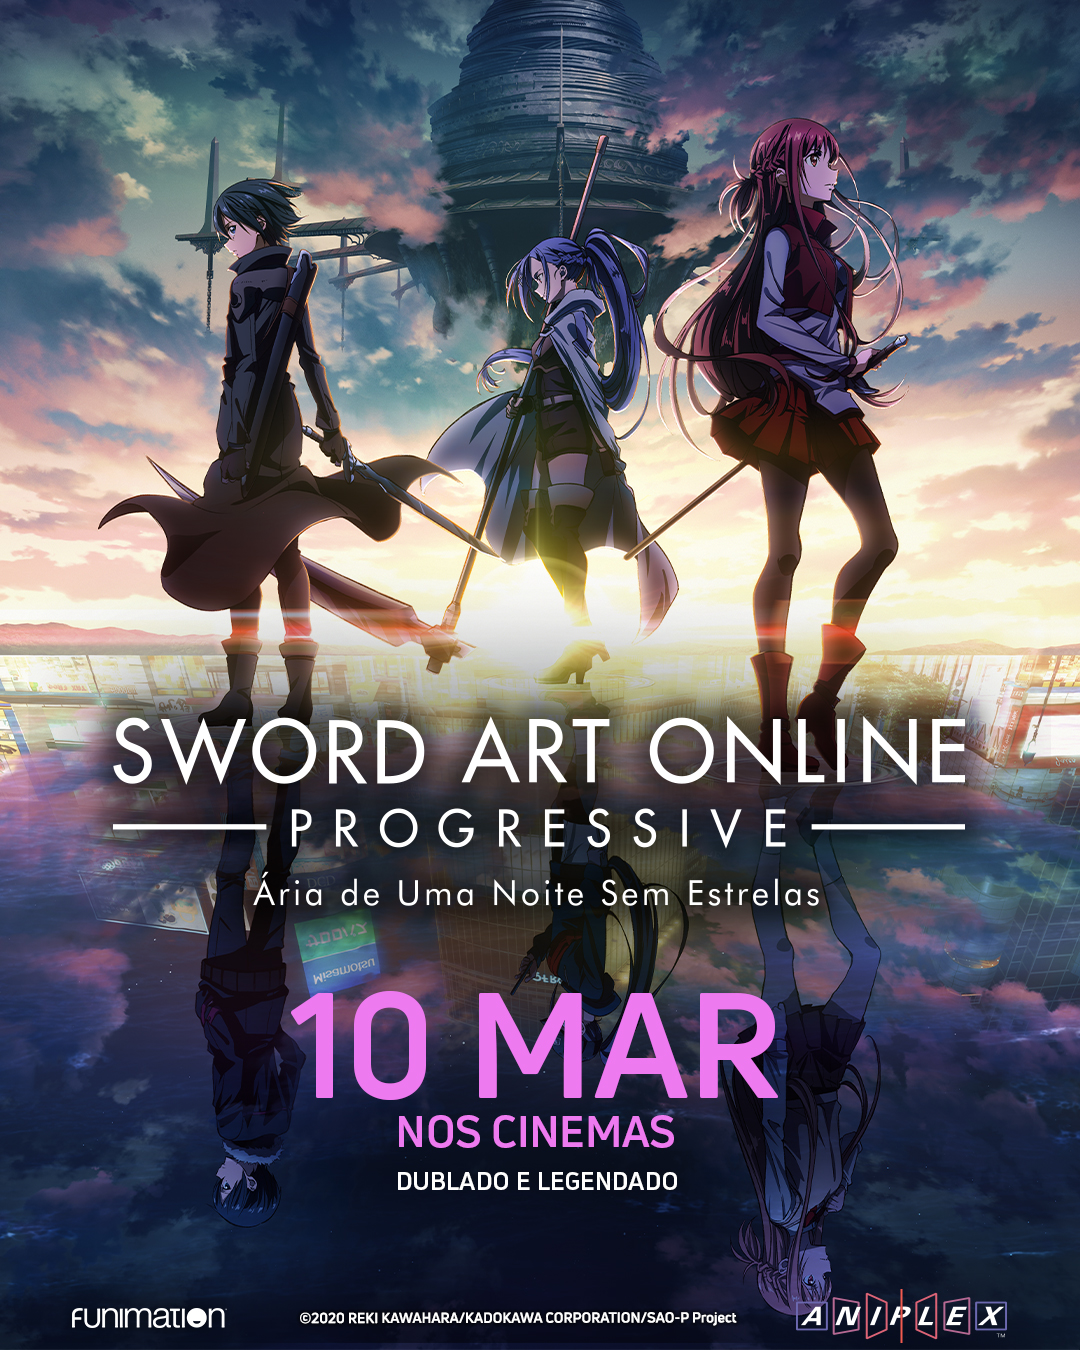 Sword Art Online: Progressive - Ária de Uma Noite Sem Estrelas, Dublapédia